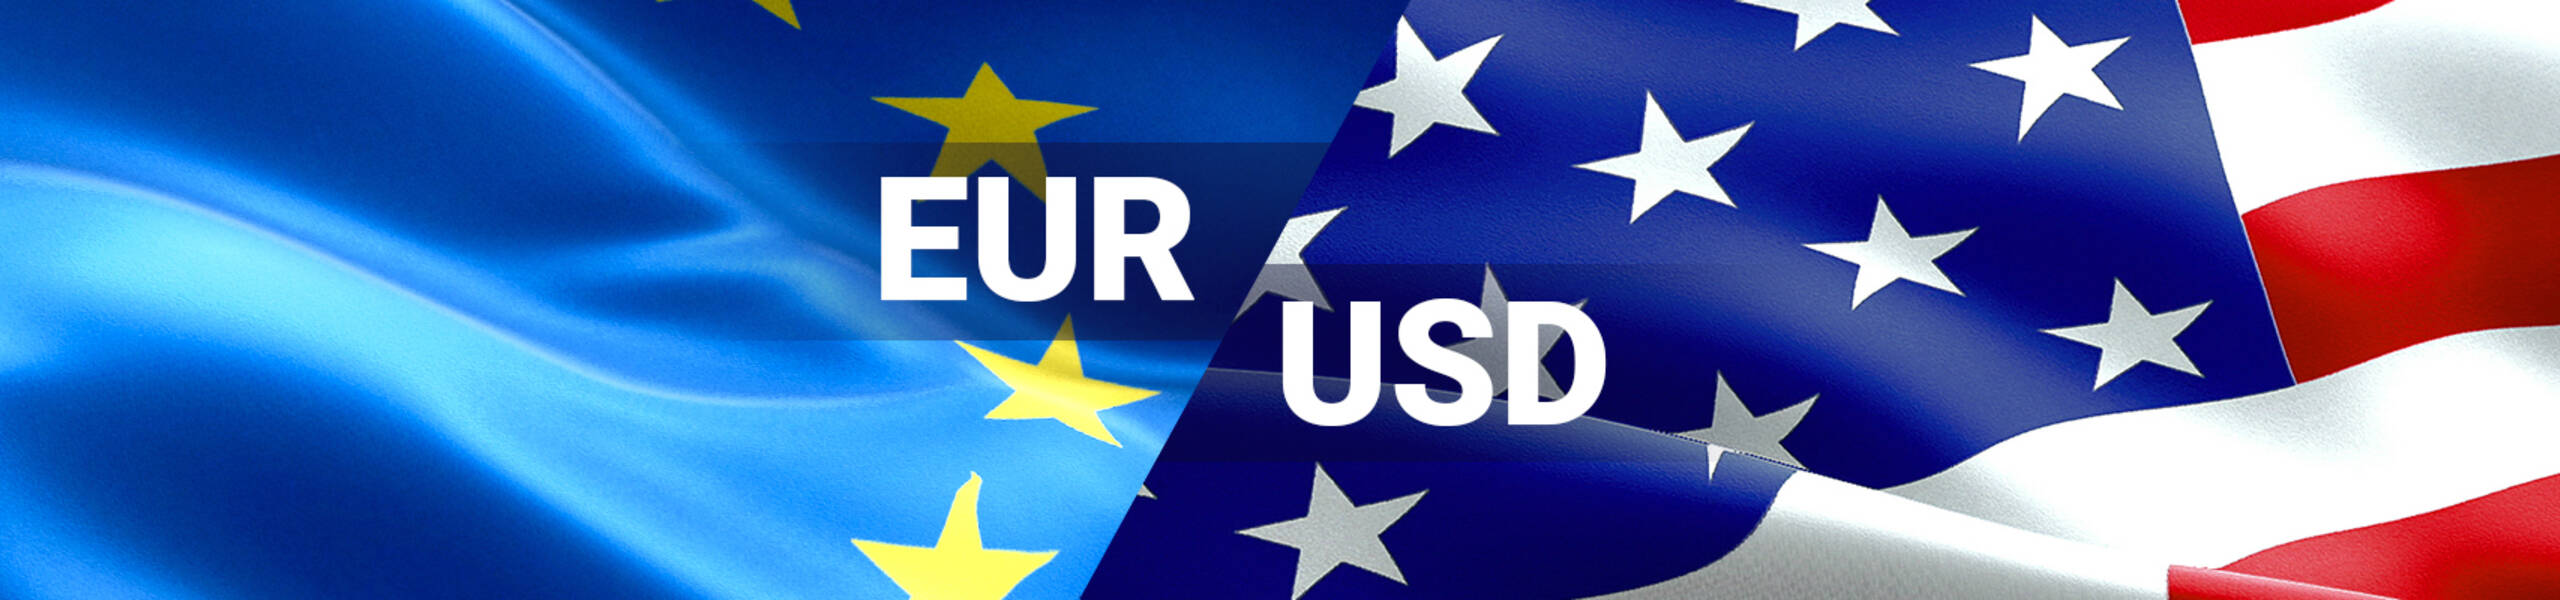 EUR/USD Previsión semanal Enero 8 al 12